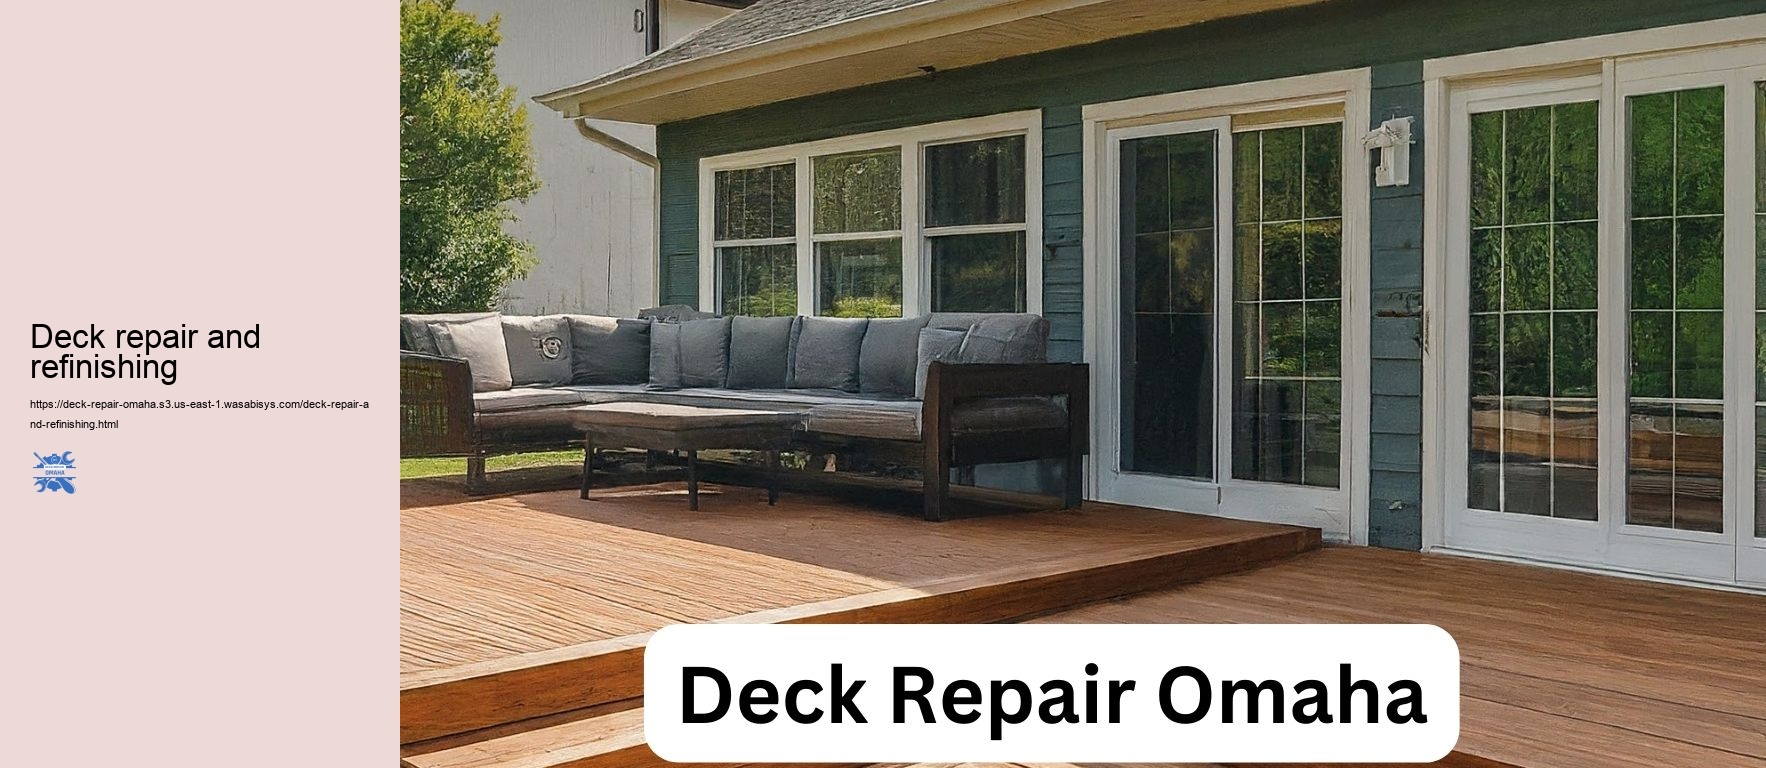 Deck repair and refinishing